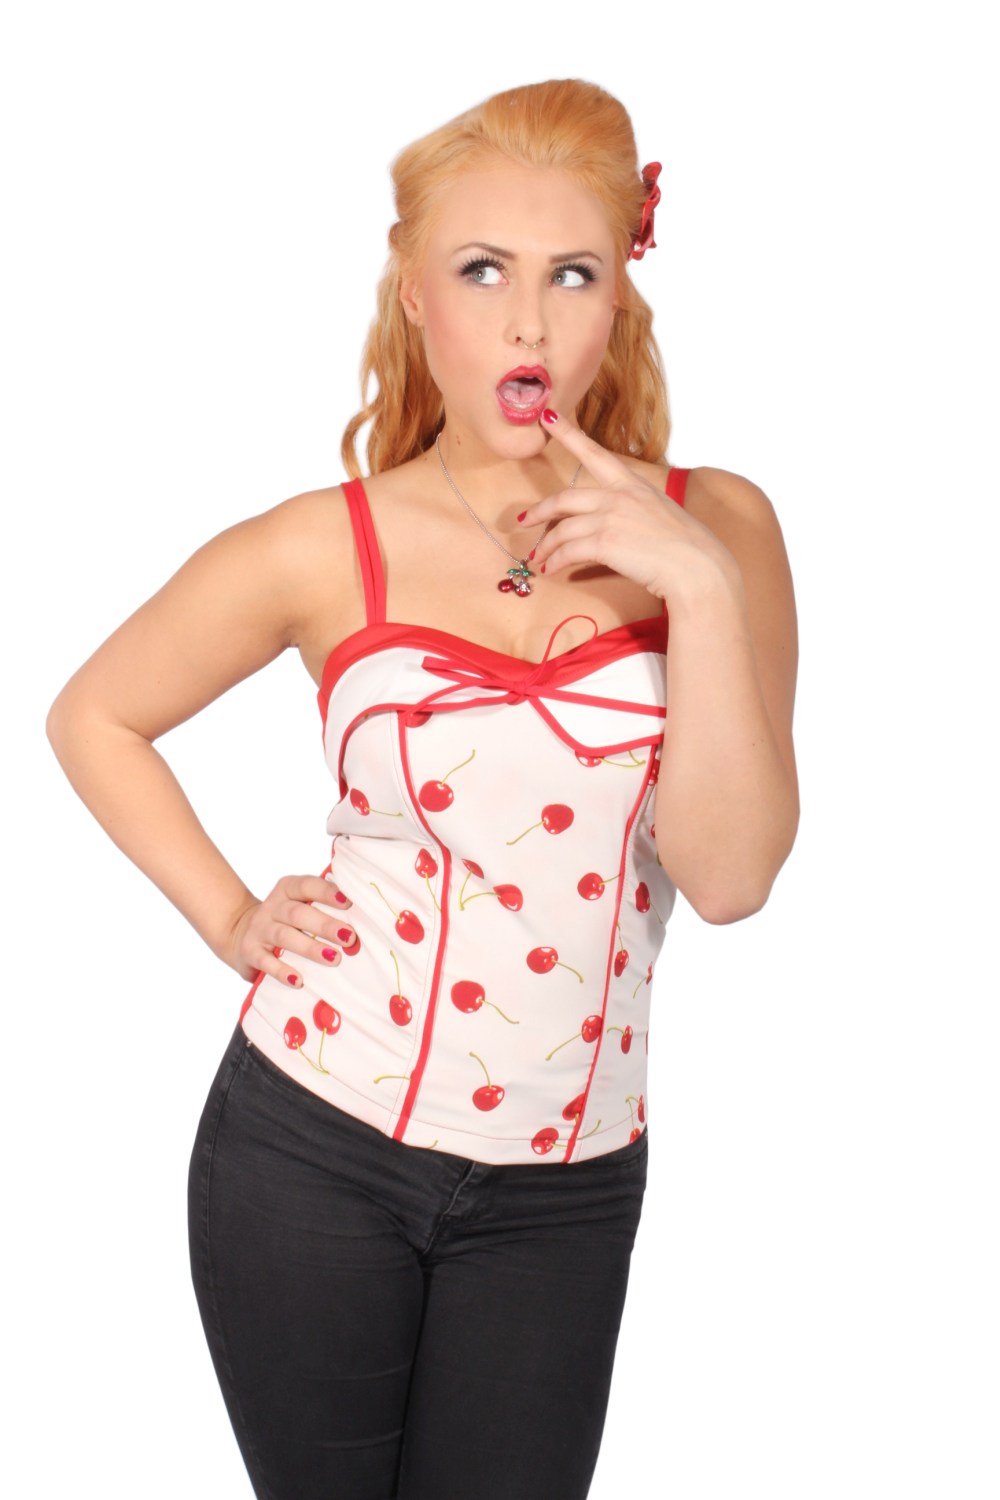 Kirschen rockabilly pin up Cherry Corsage Träger TOP Shirt incl Pads rot